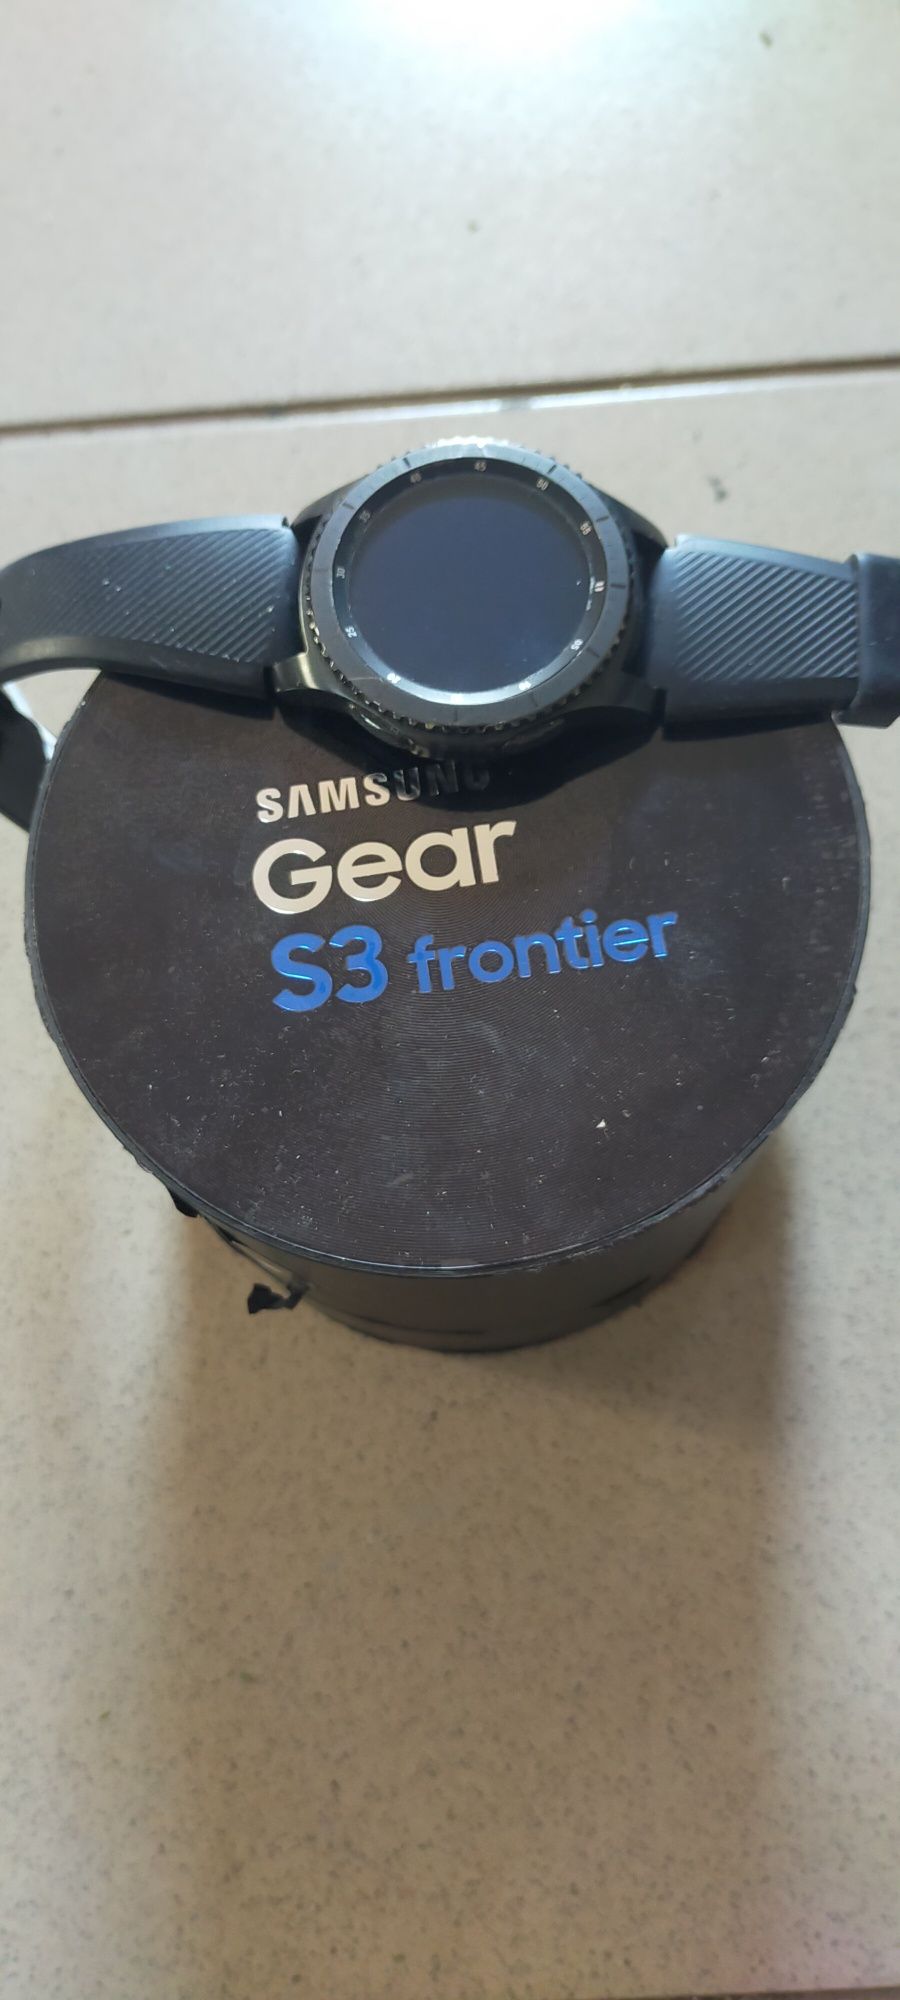 Samsung Galaxy Gear s3 Frontier
Bateria ți